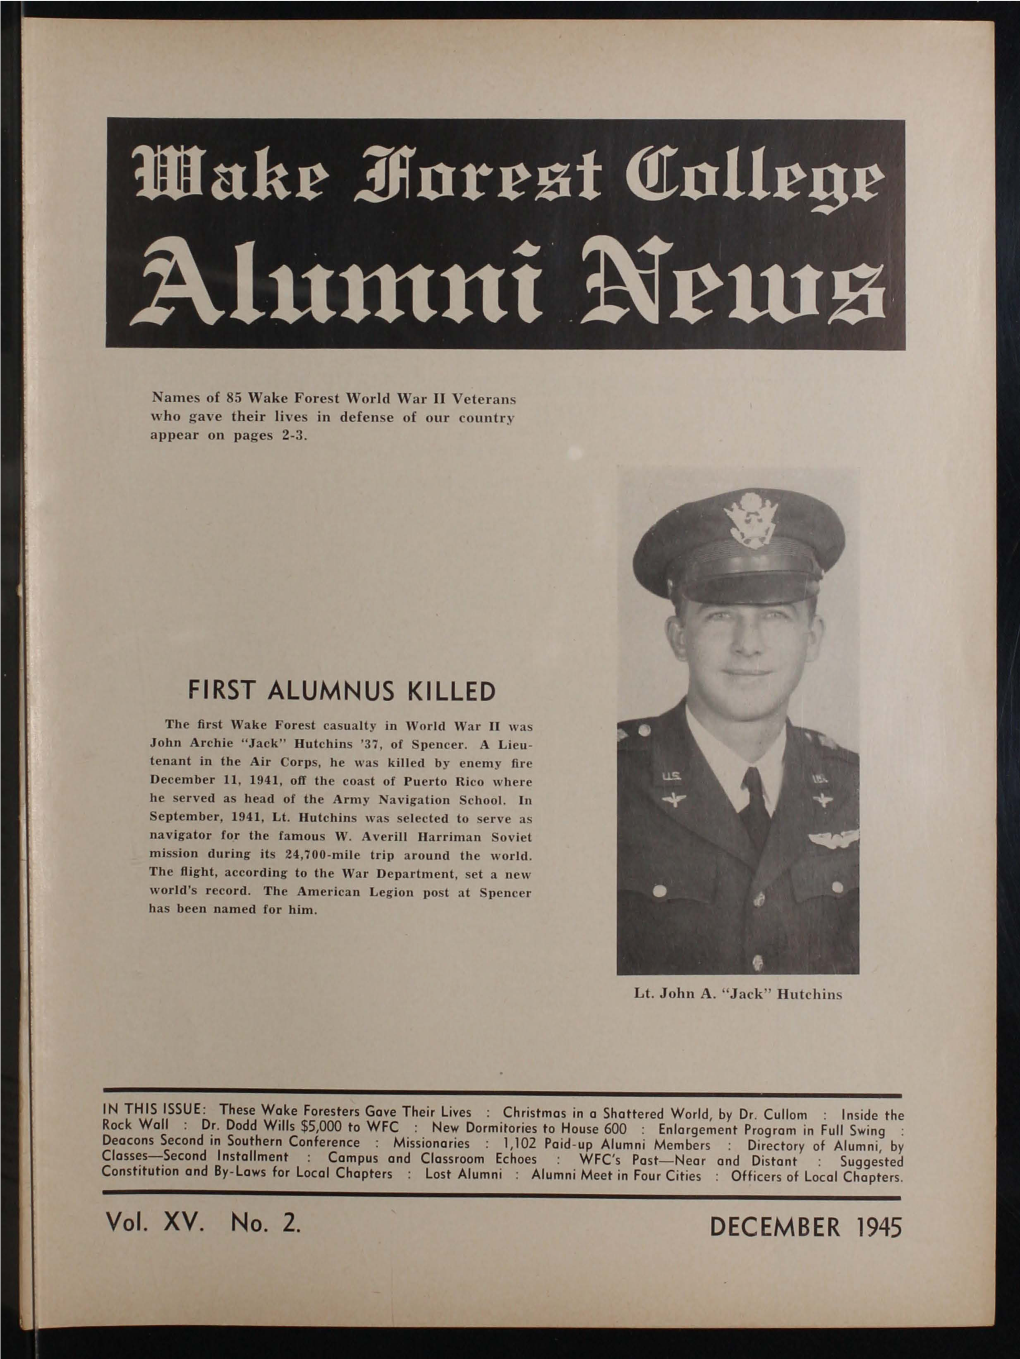 FIRST ALUMNUS KILLED Vol. XV. No.2. DECEMBER 1945